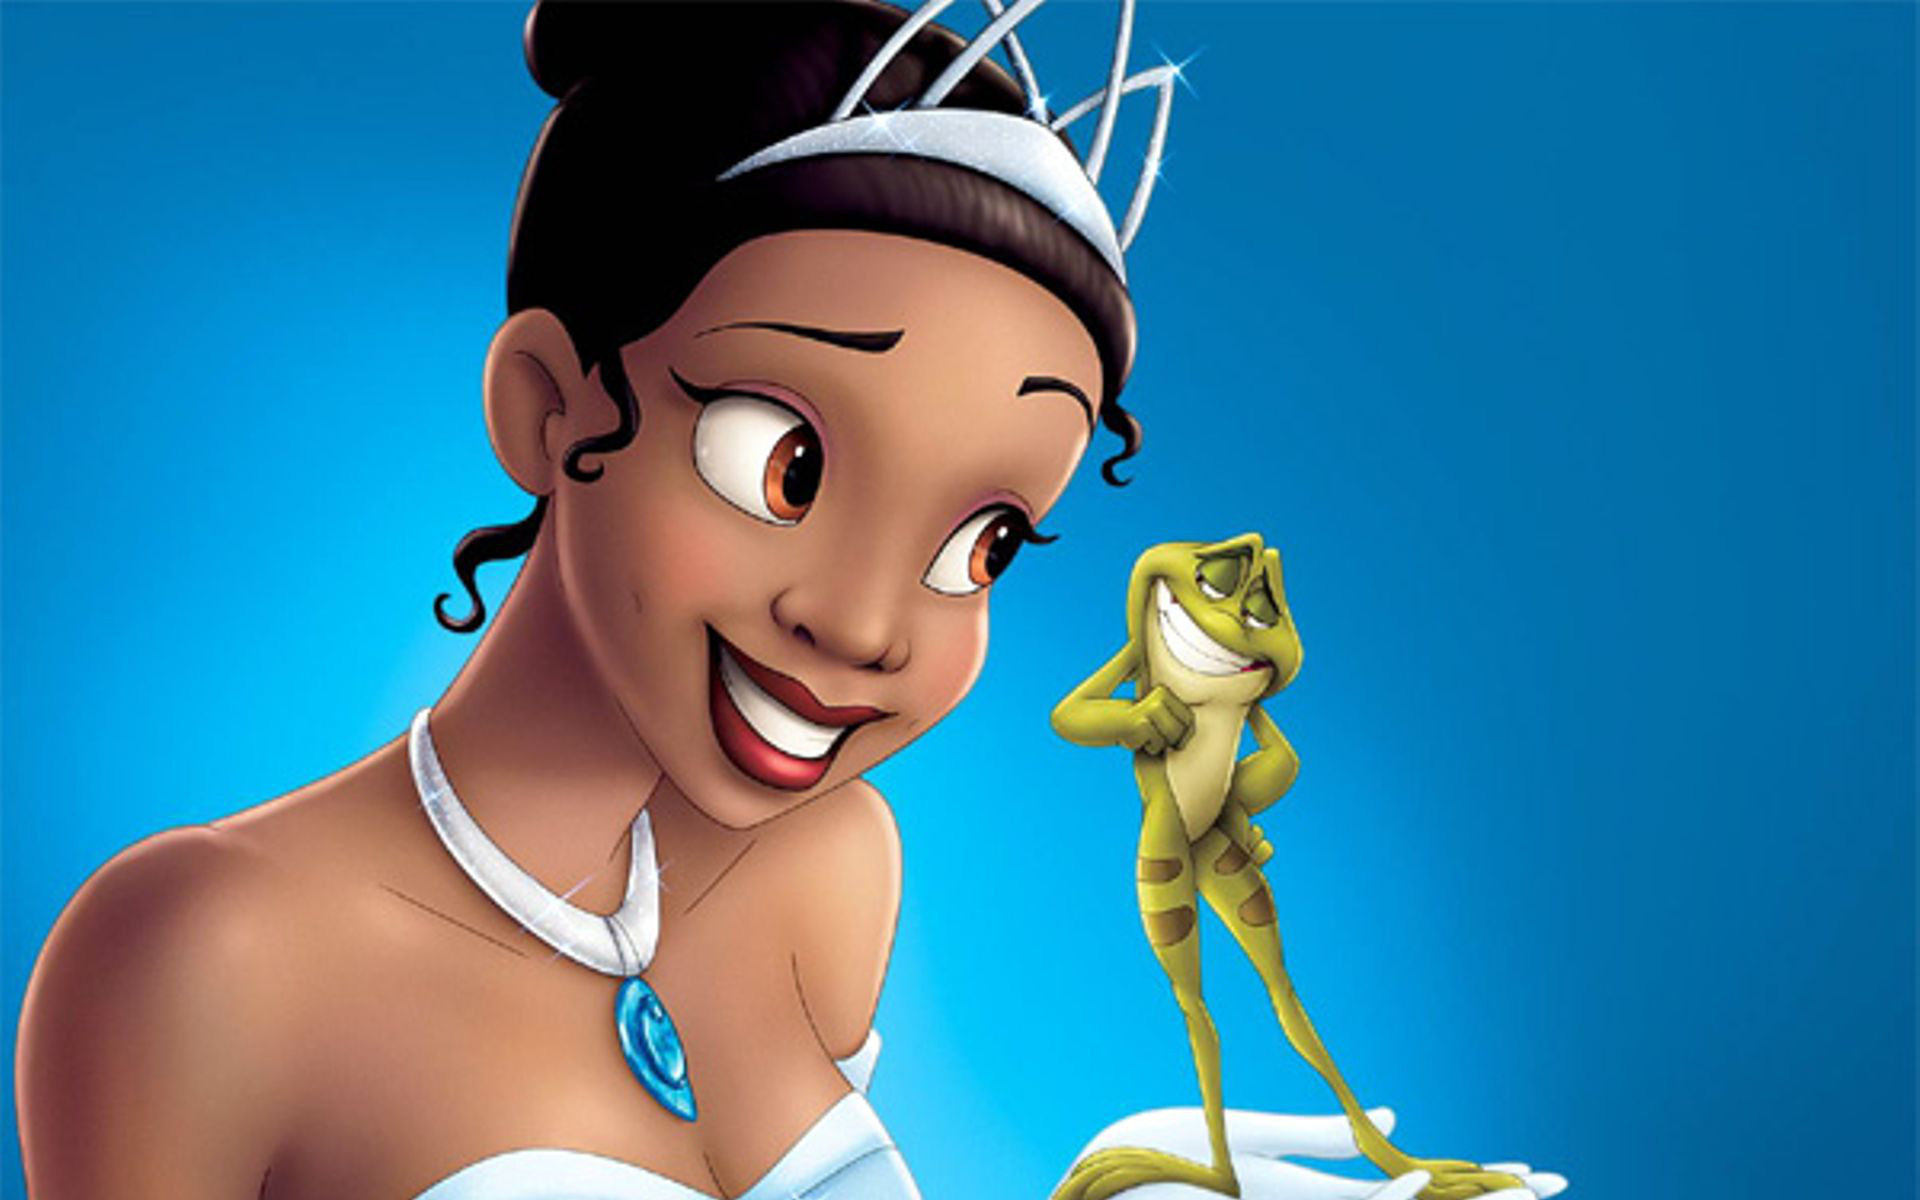 Fan lo nàng công chúa ‘The Princess and the Frog’ bị Disney đổi màu da